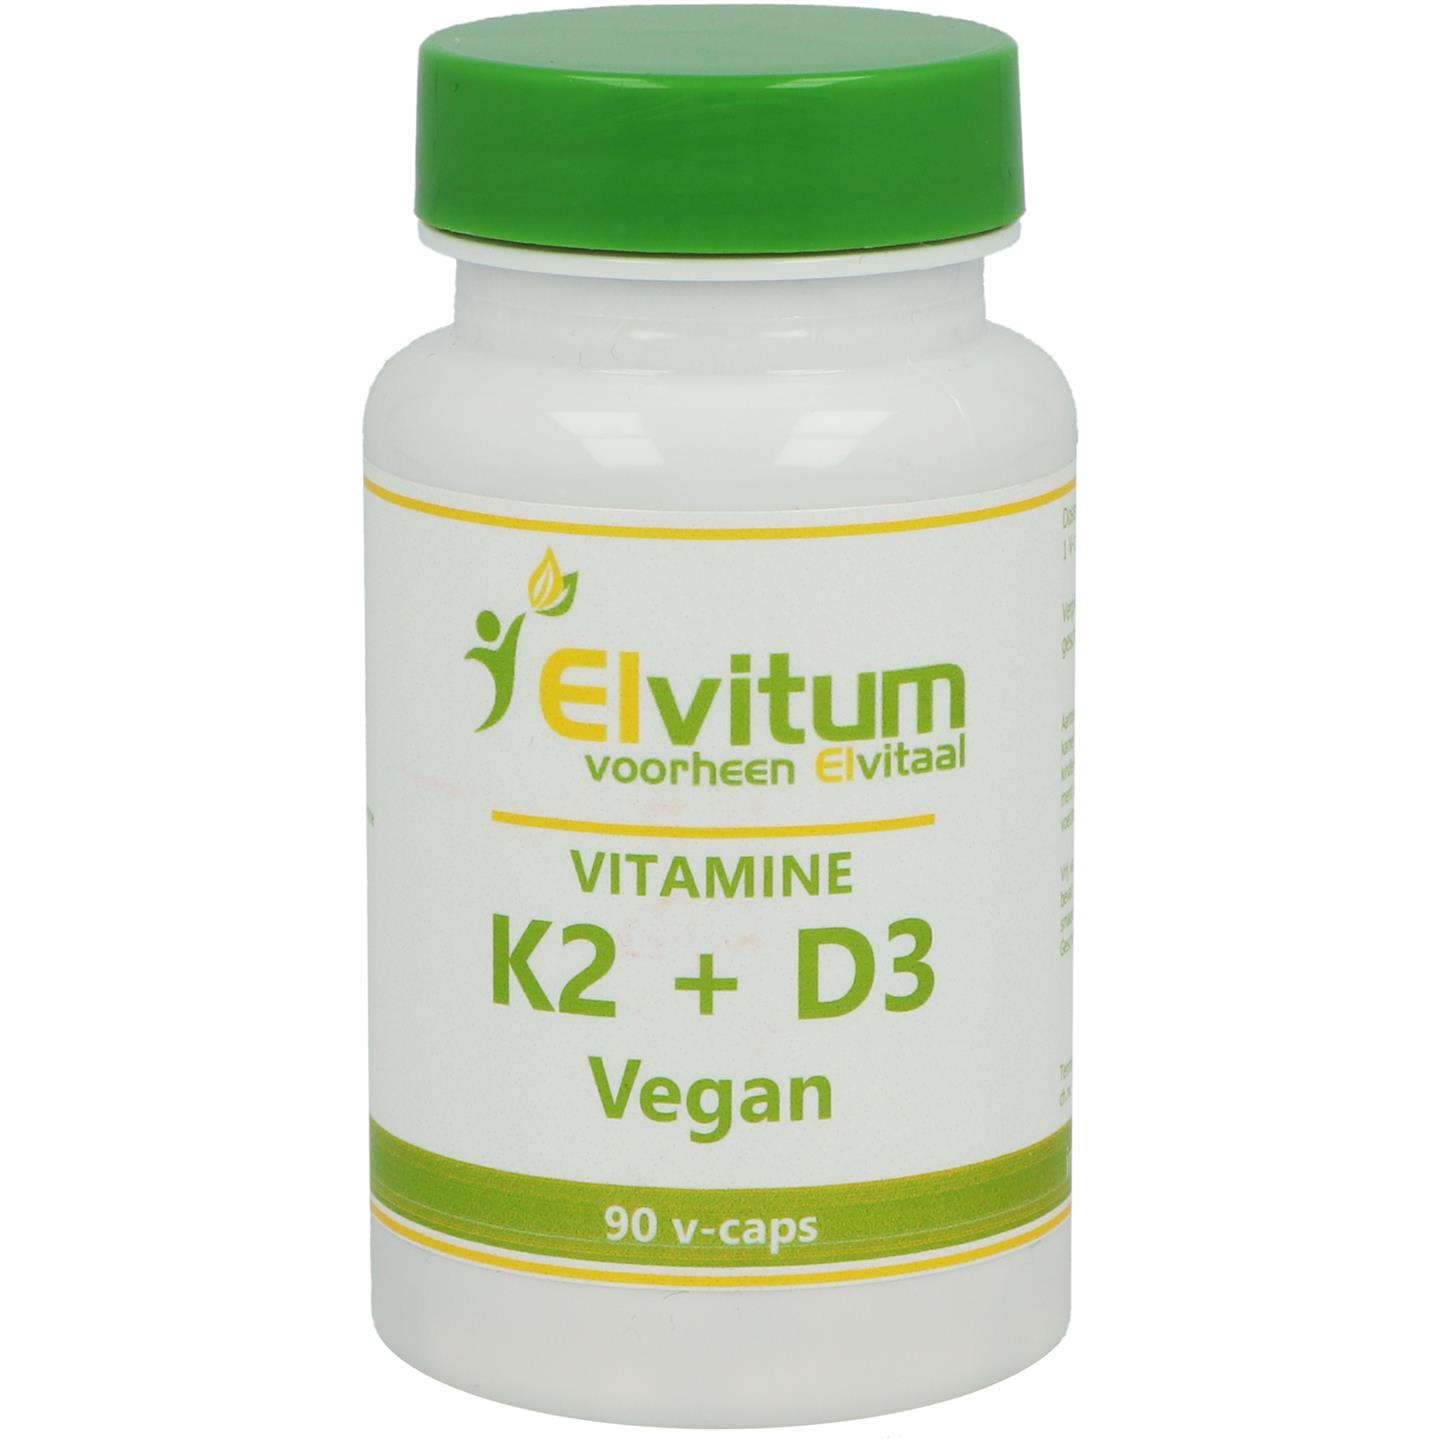 Vitamine K2 + D3 Vegan